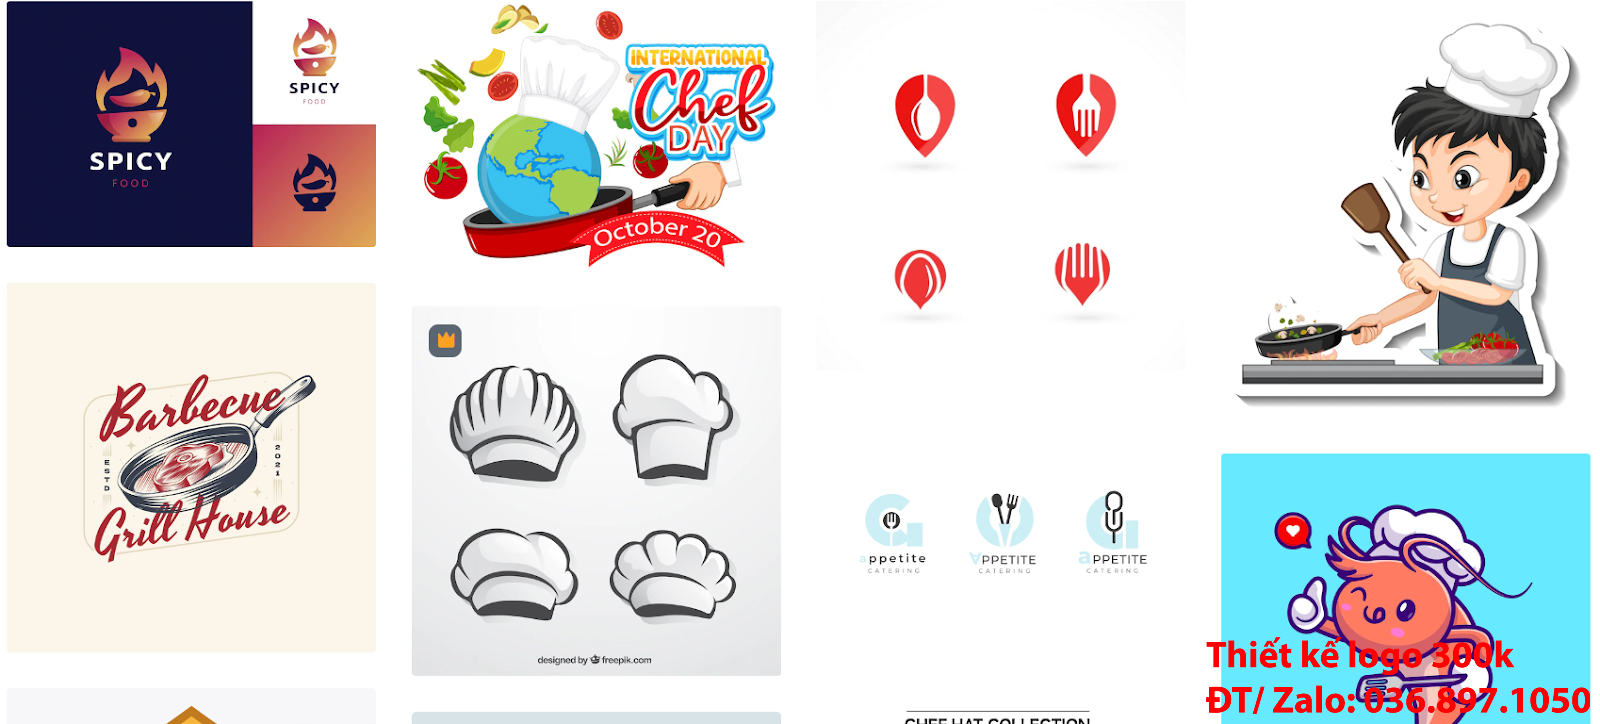 Công ty nhận thiết kế online các Mẫu Hình ảnh Logo đầu bếp chef cook PNG và Vector đẹp giá rẻ chuyên nghiệp với chất lượng cao nhất tại Tp Hồ Chí Minh